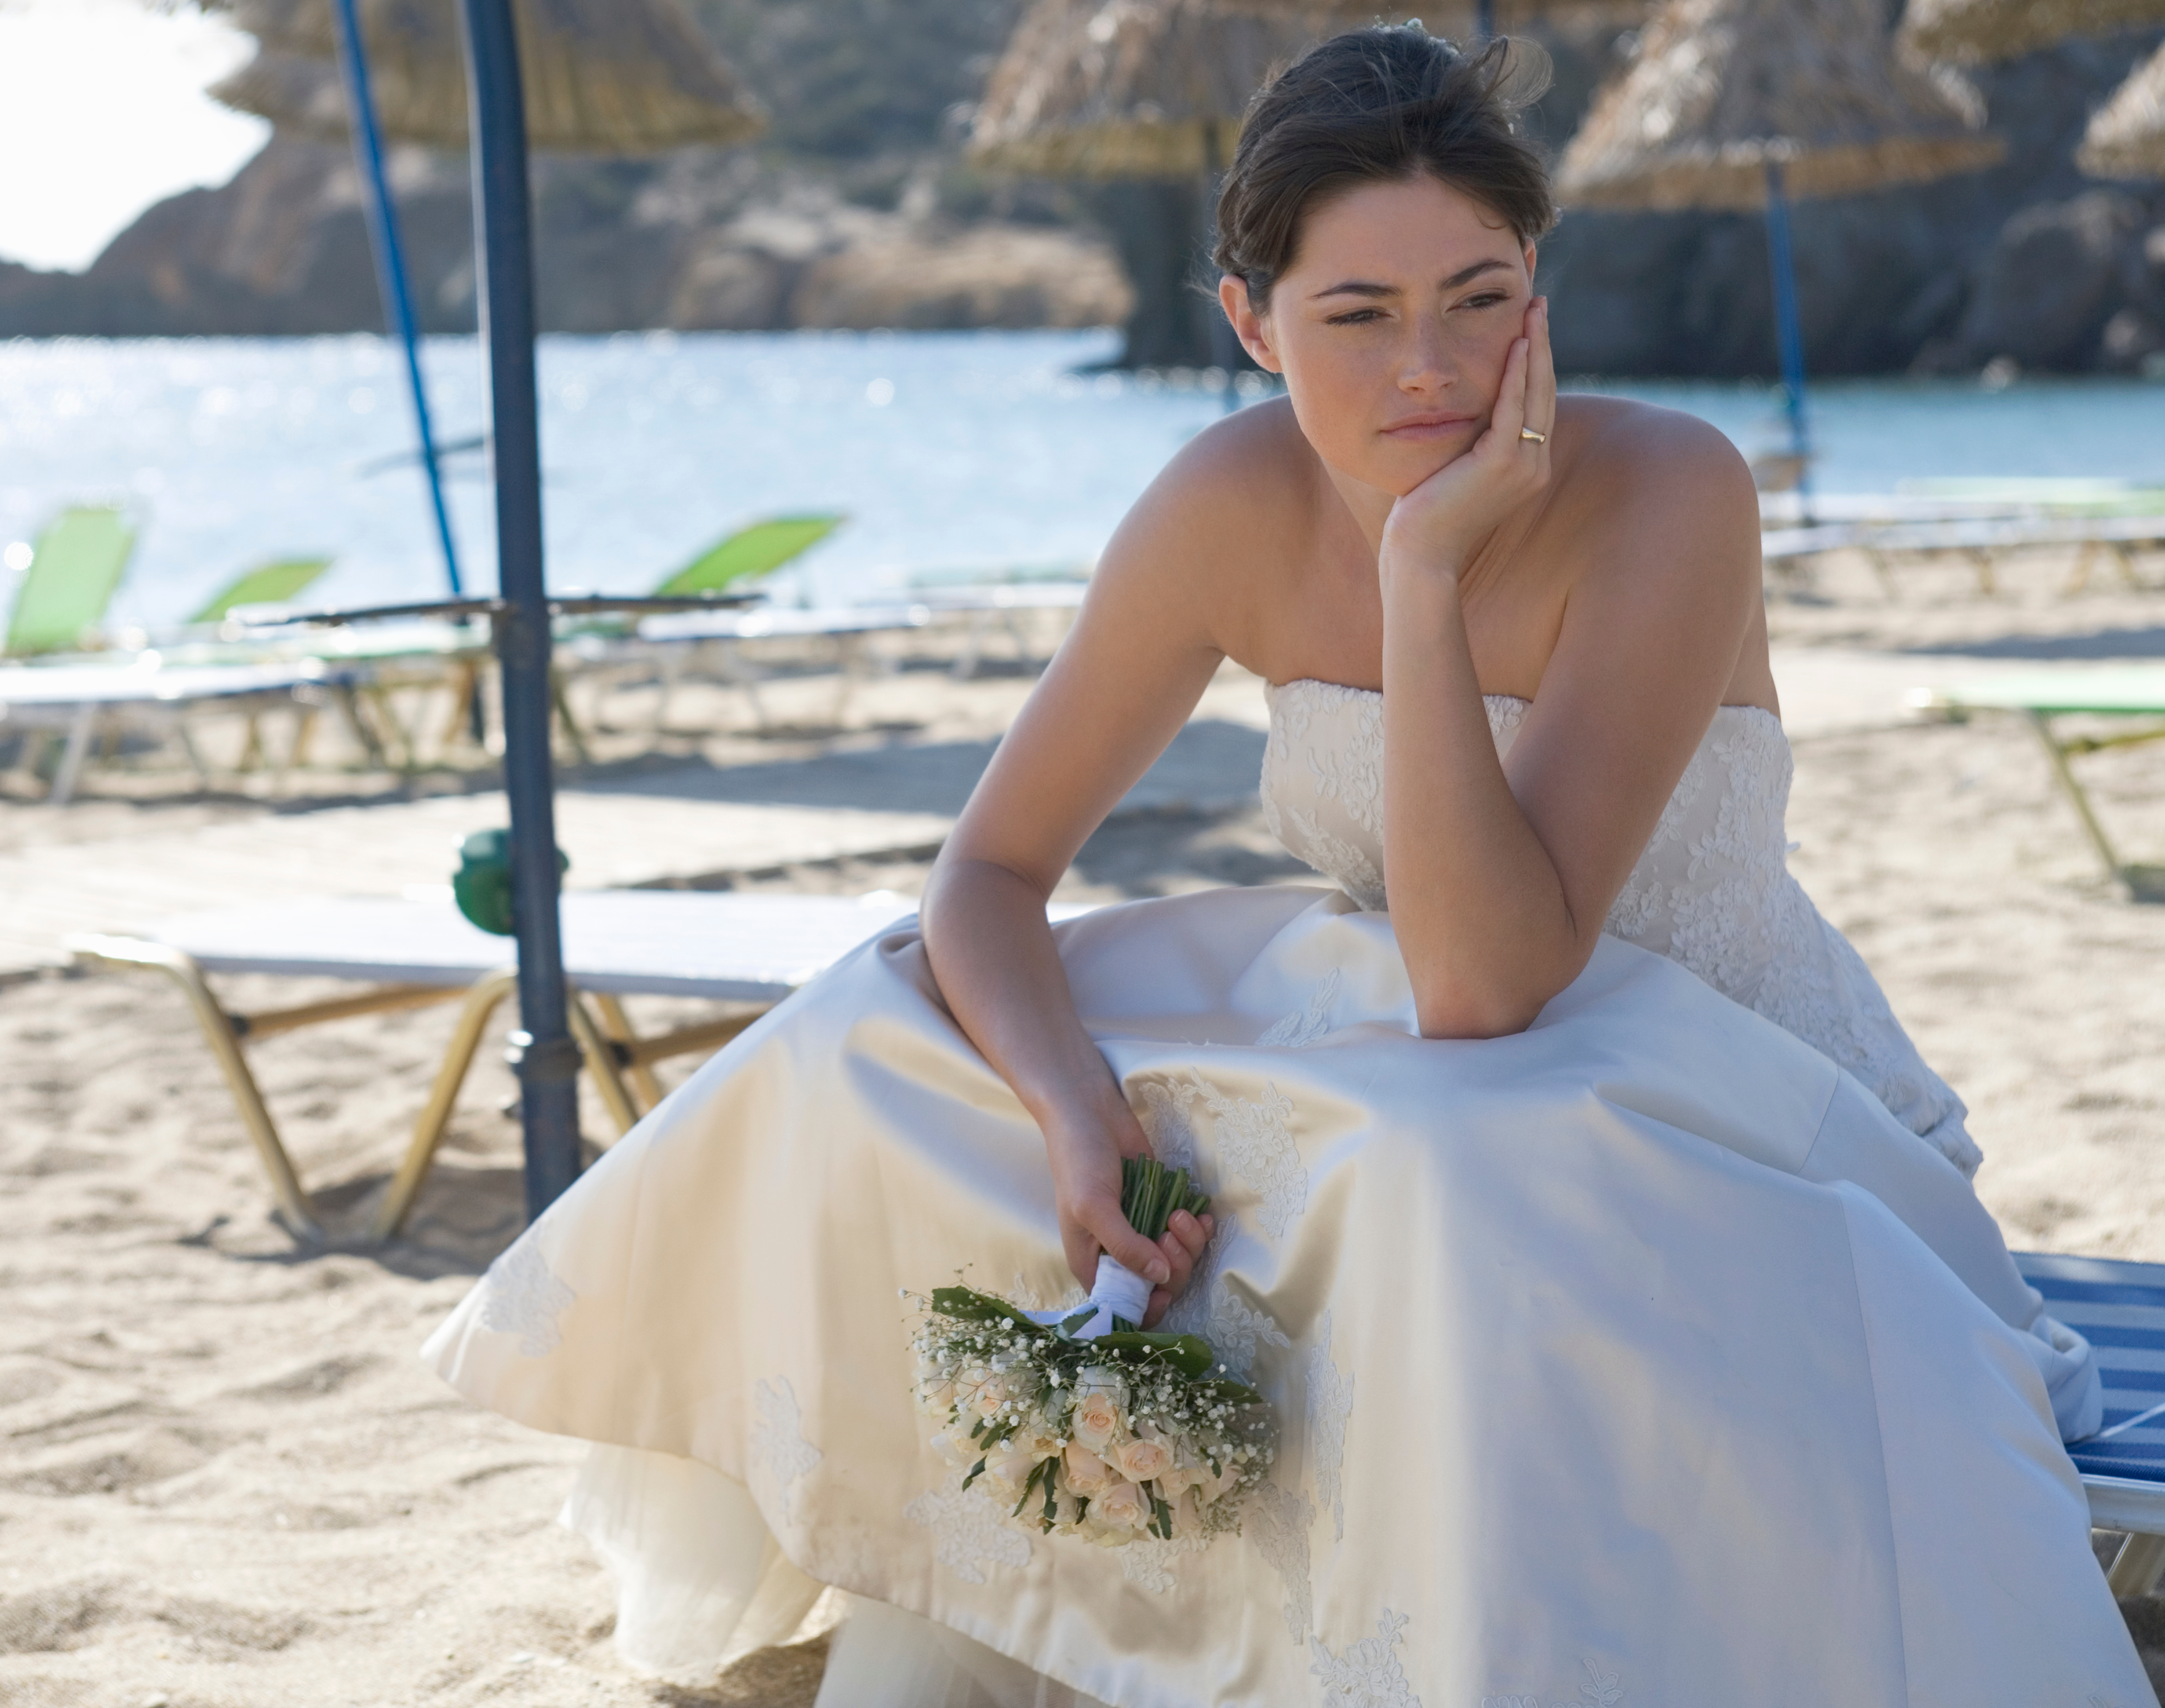 Une photo montrant une mariée qui a l'air triste et déçue le jour de sa fête. | Source : Shutterstock/Juice Flair